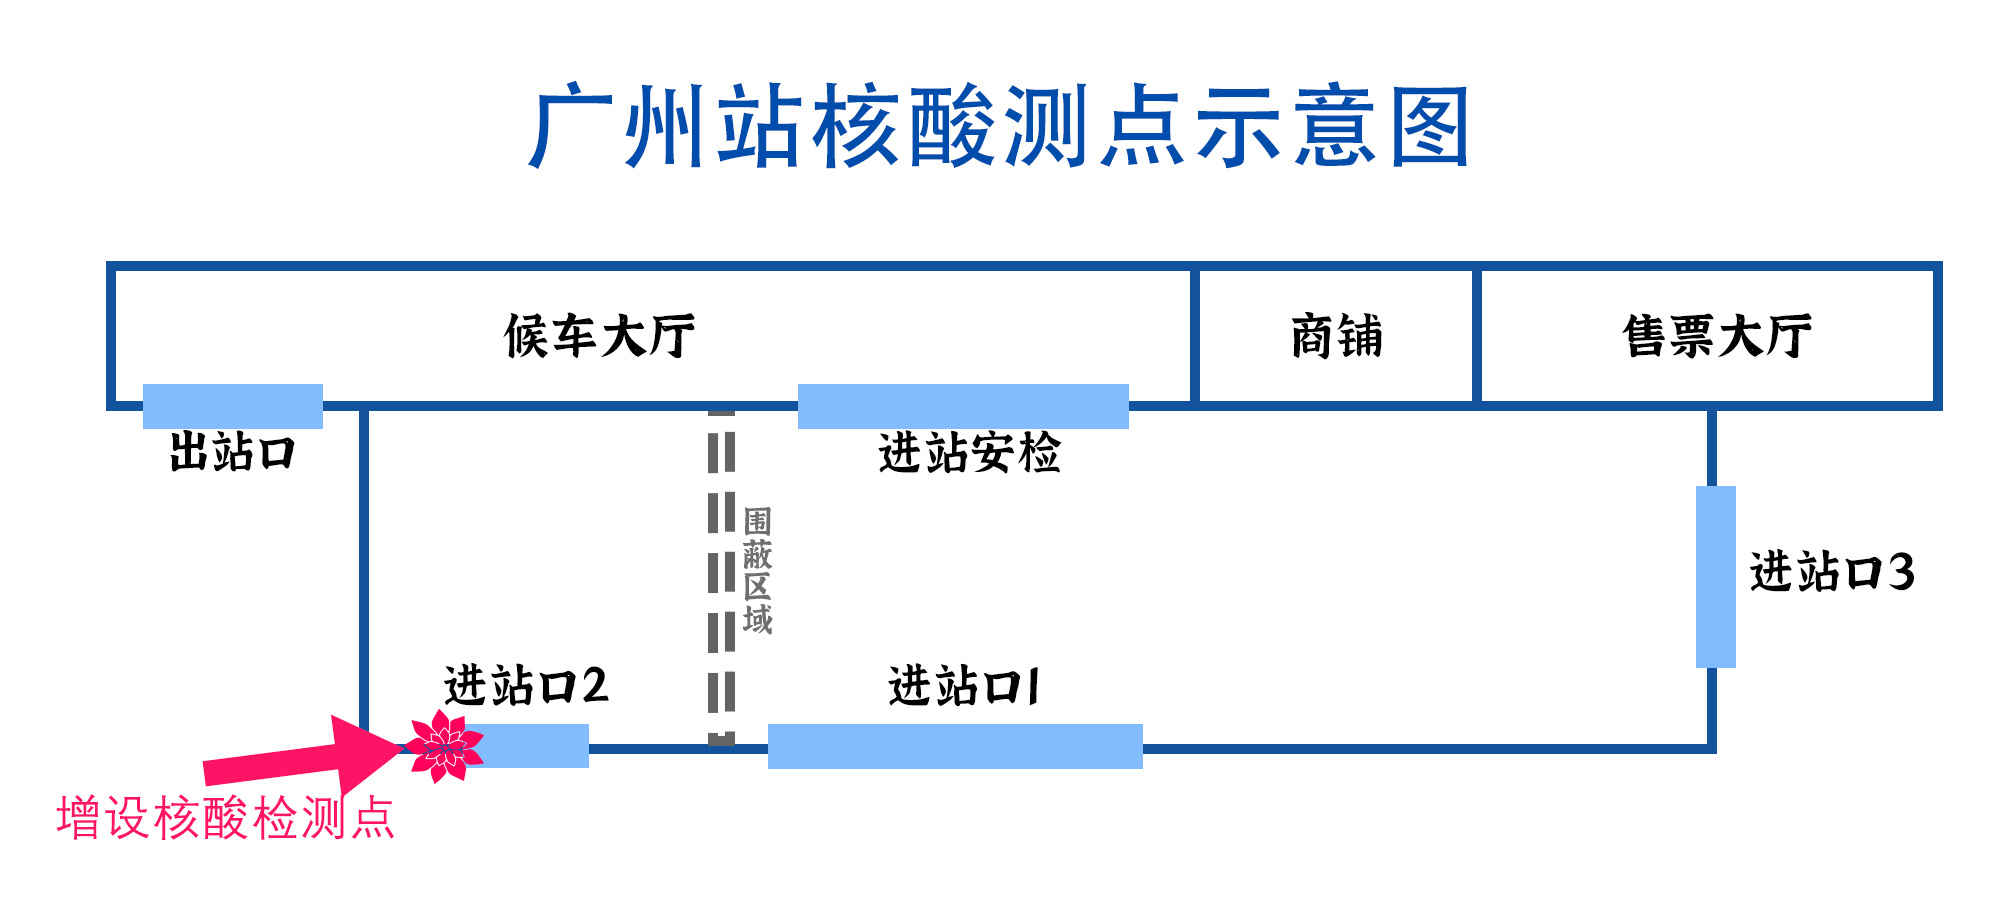 广州站核酸检测点示意图